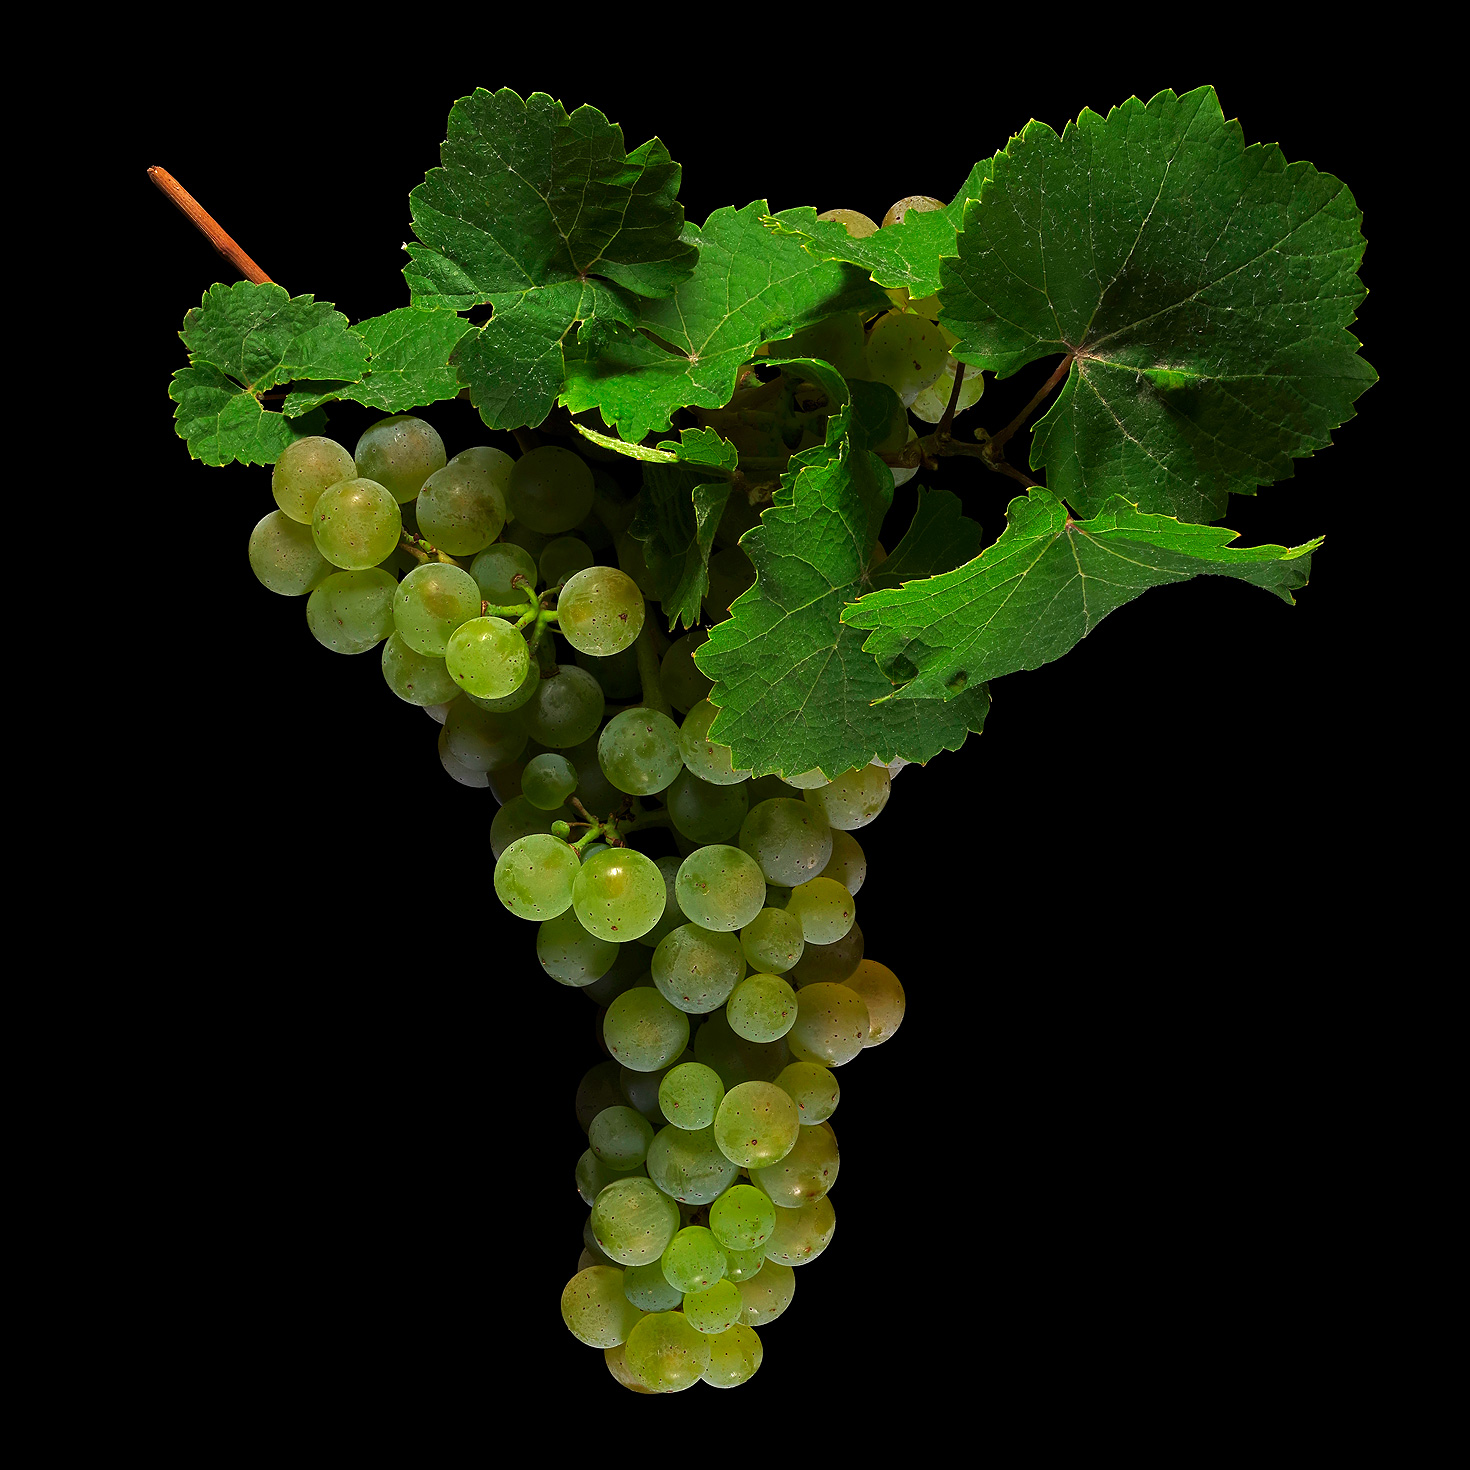 Die Edle Weinrebe (Riesling): Vitis vinifera subsp. vinifera